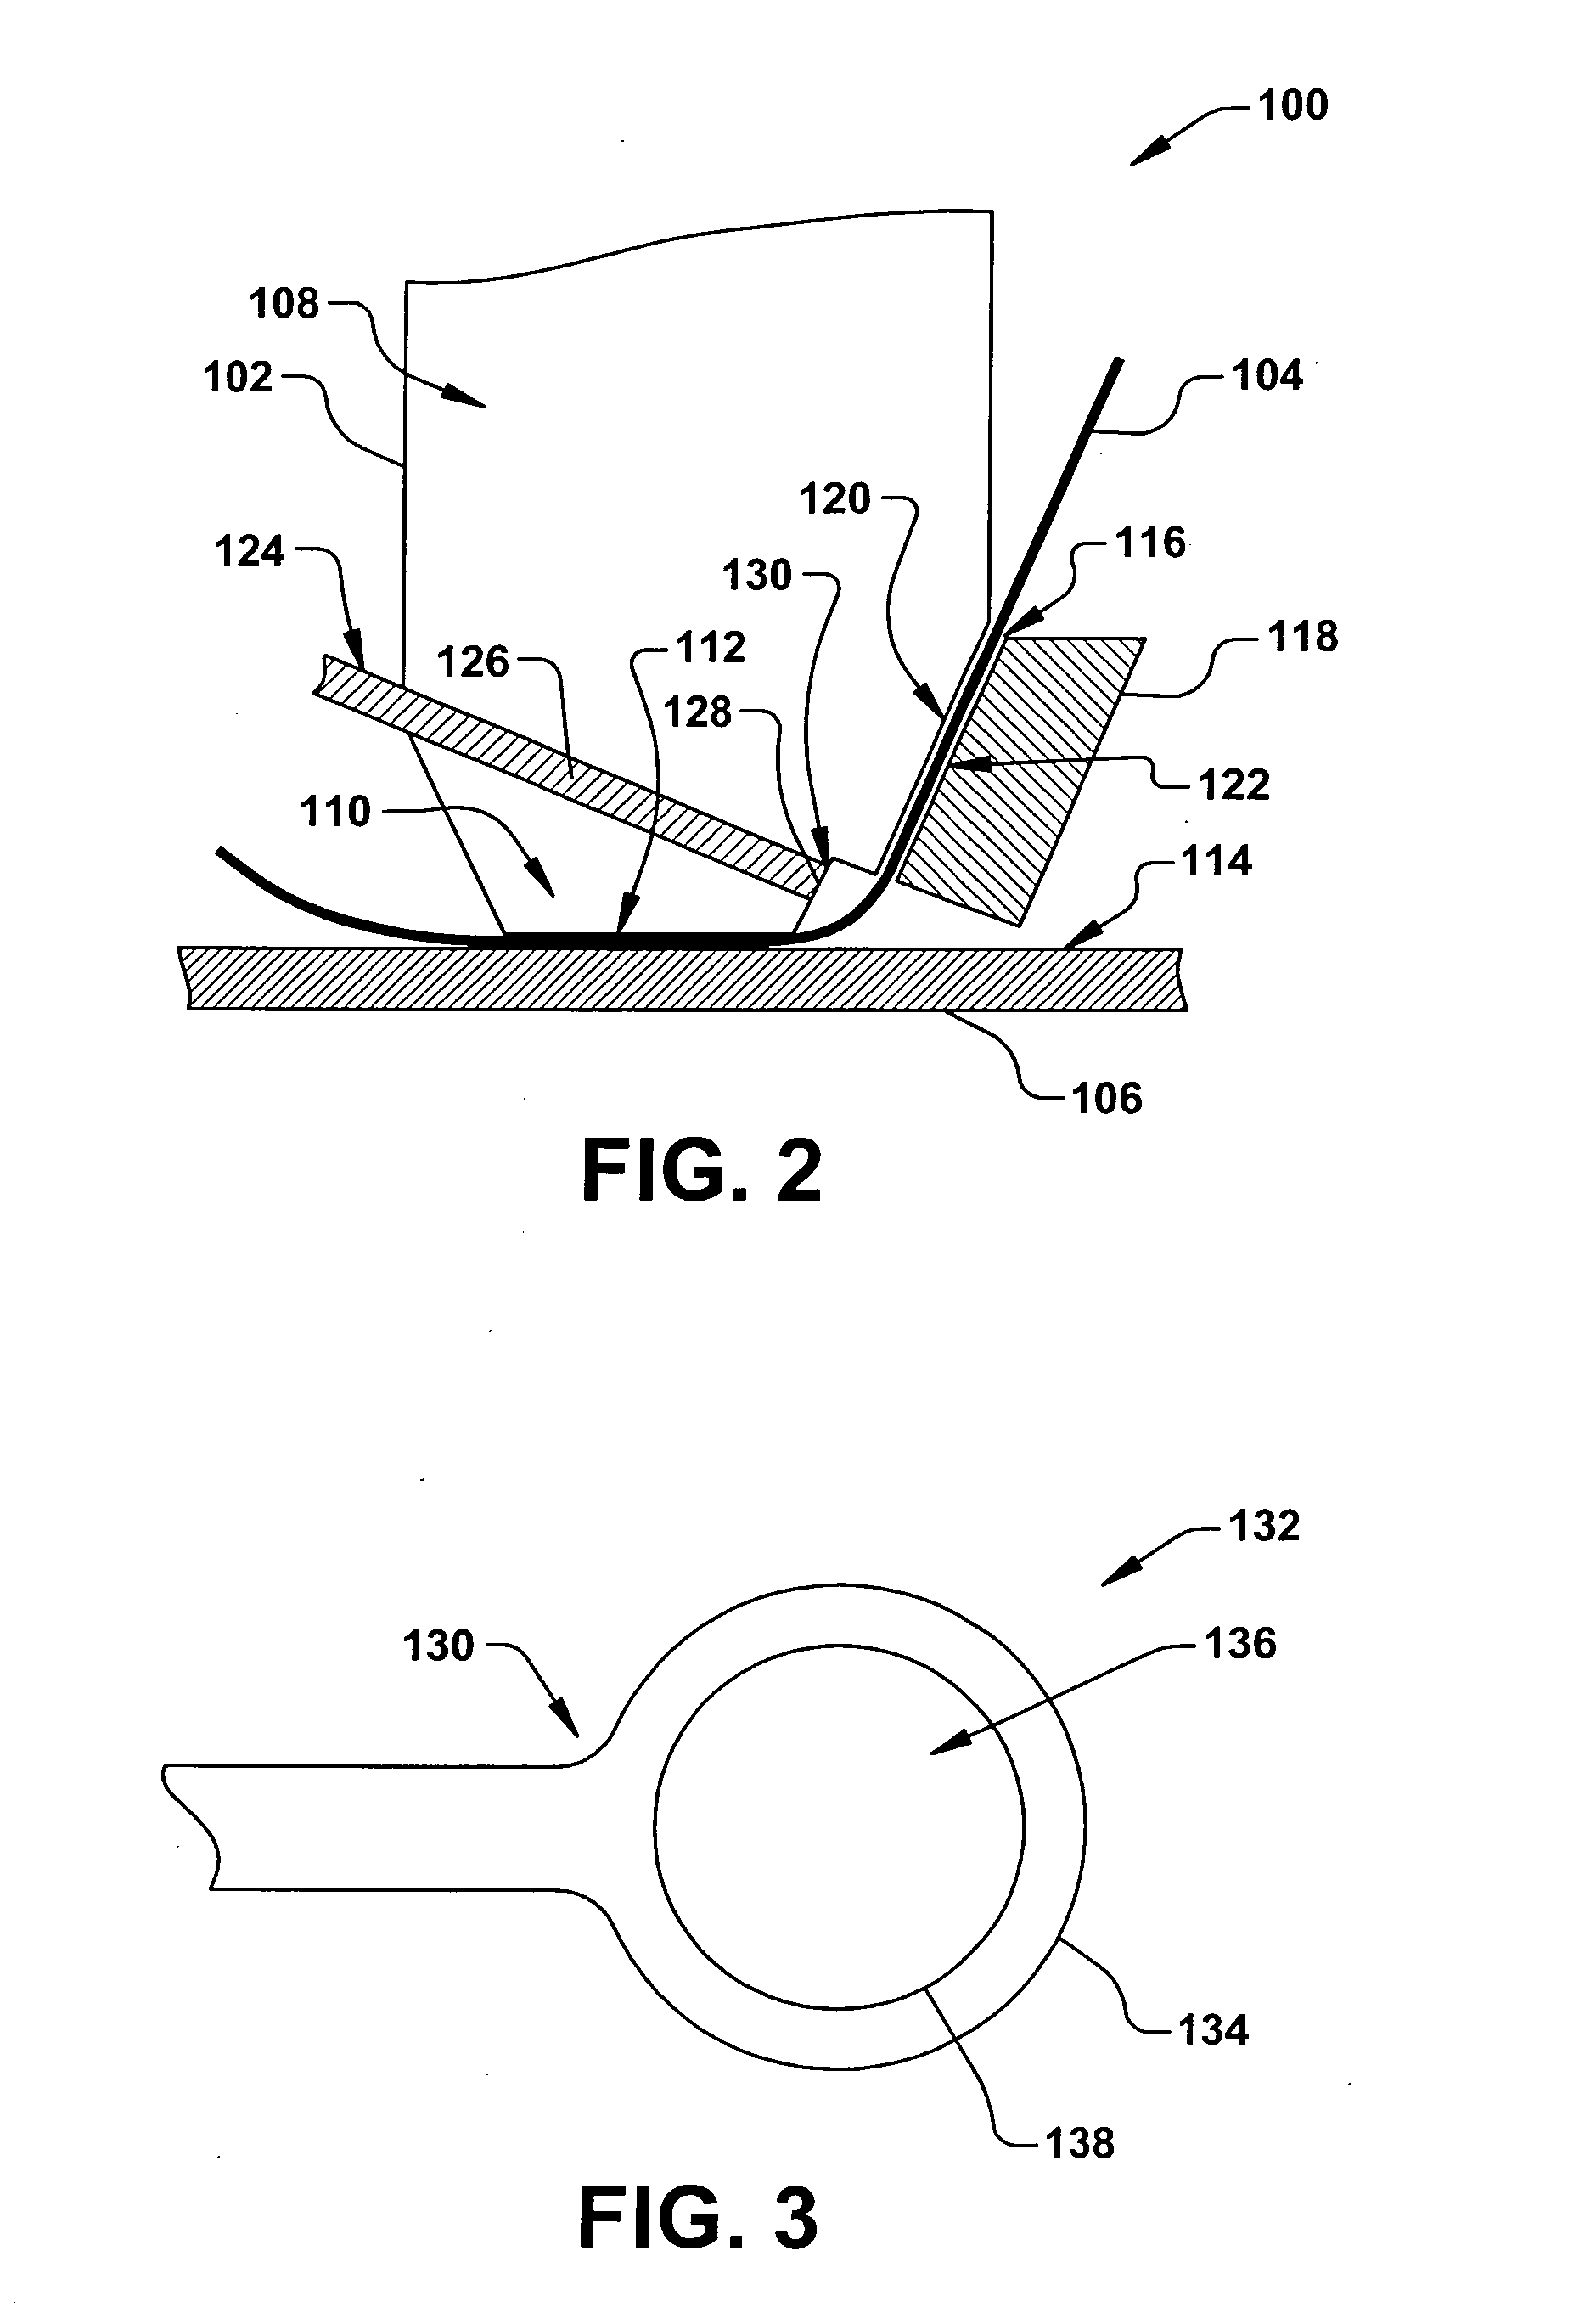 Bond capillary design for ribbon wire bonding